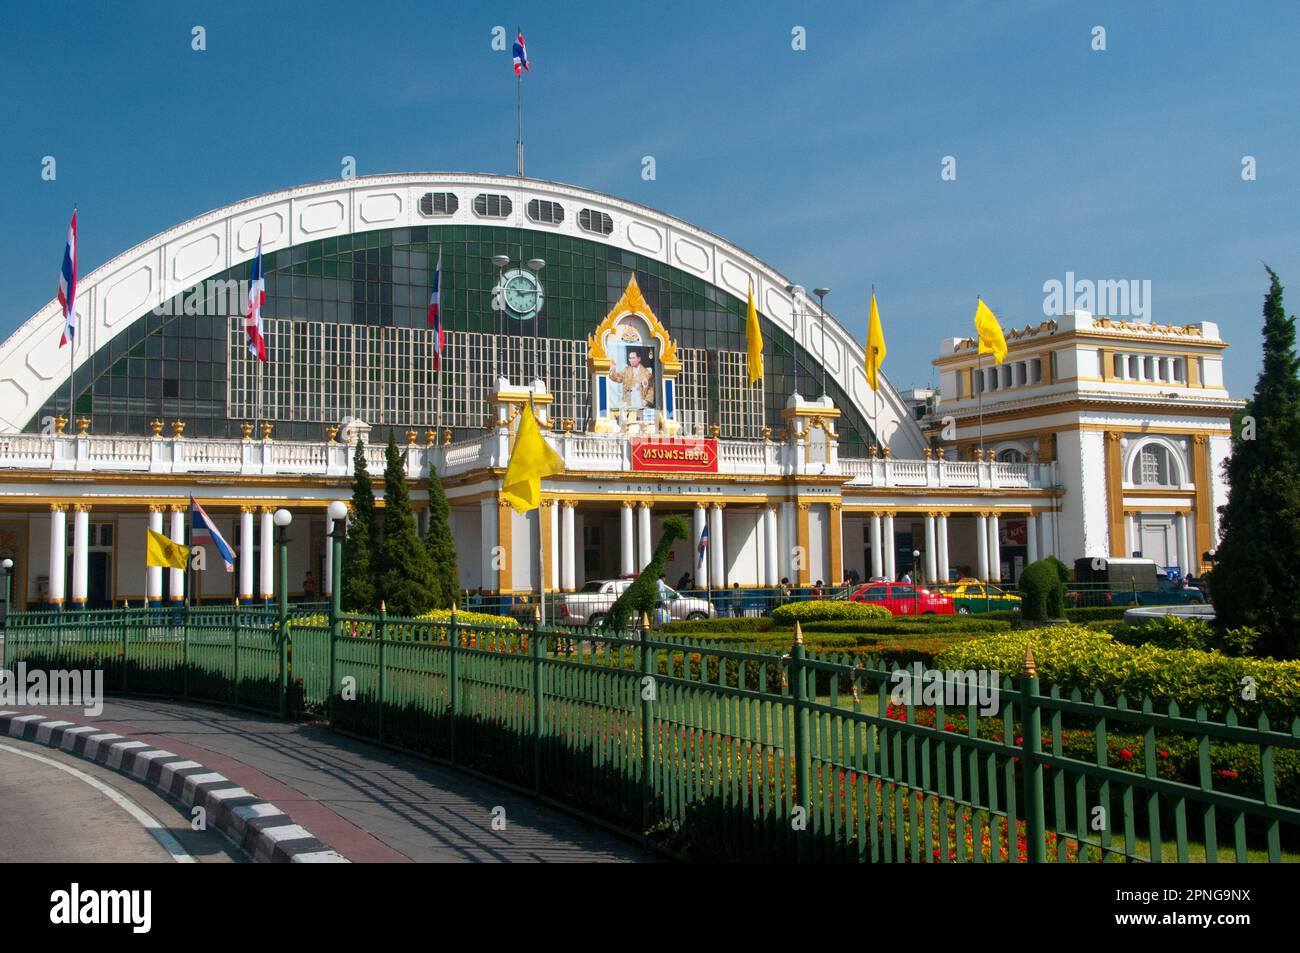 Thailandia: Stazione ferroviaria di Hualamphong (Hua Lamphong) a Bangkok. La stazione fu originariamente aperta nel 1916 e costruita in stile neorinascimentale italiano. Il fronte della stazione è stato progettato dall'architetto italiano Mario Tamagno (1877 - 1941). Foto Stock